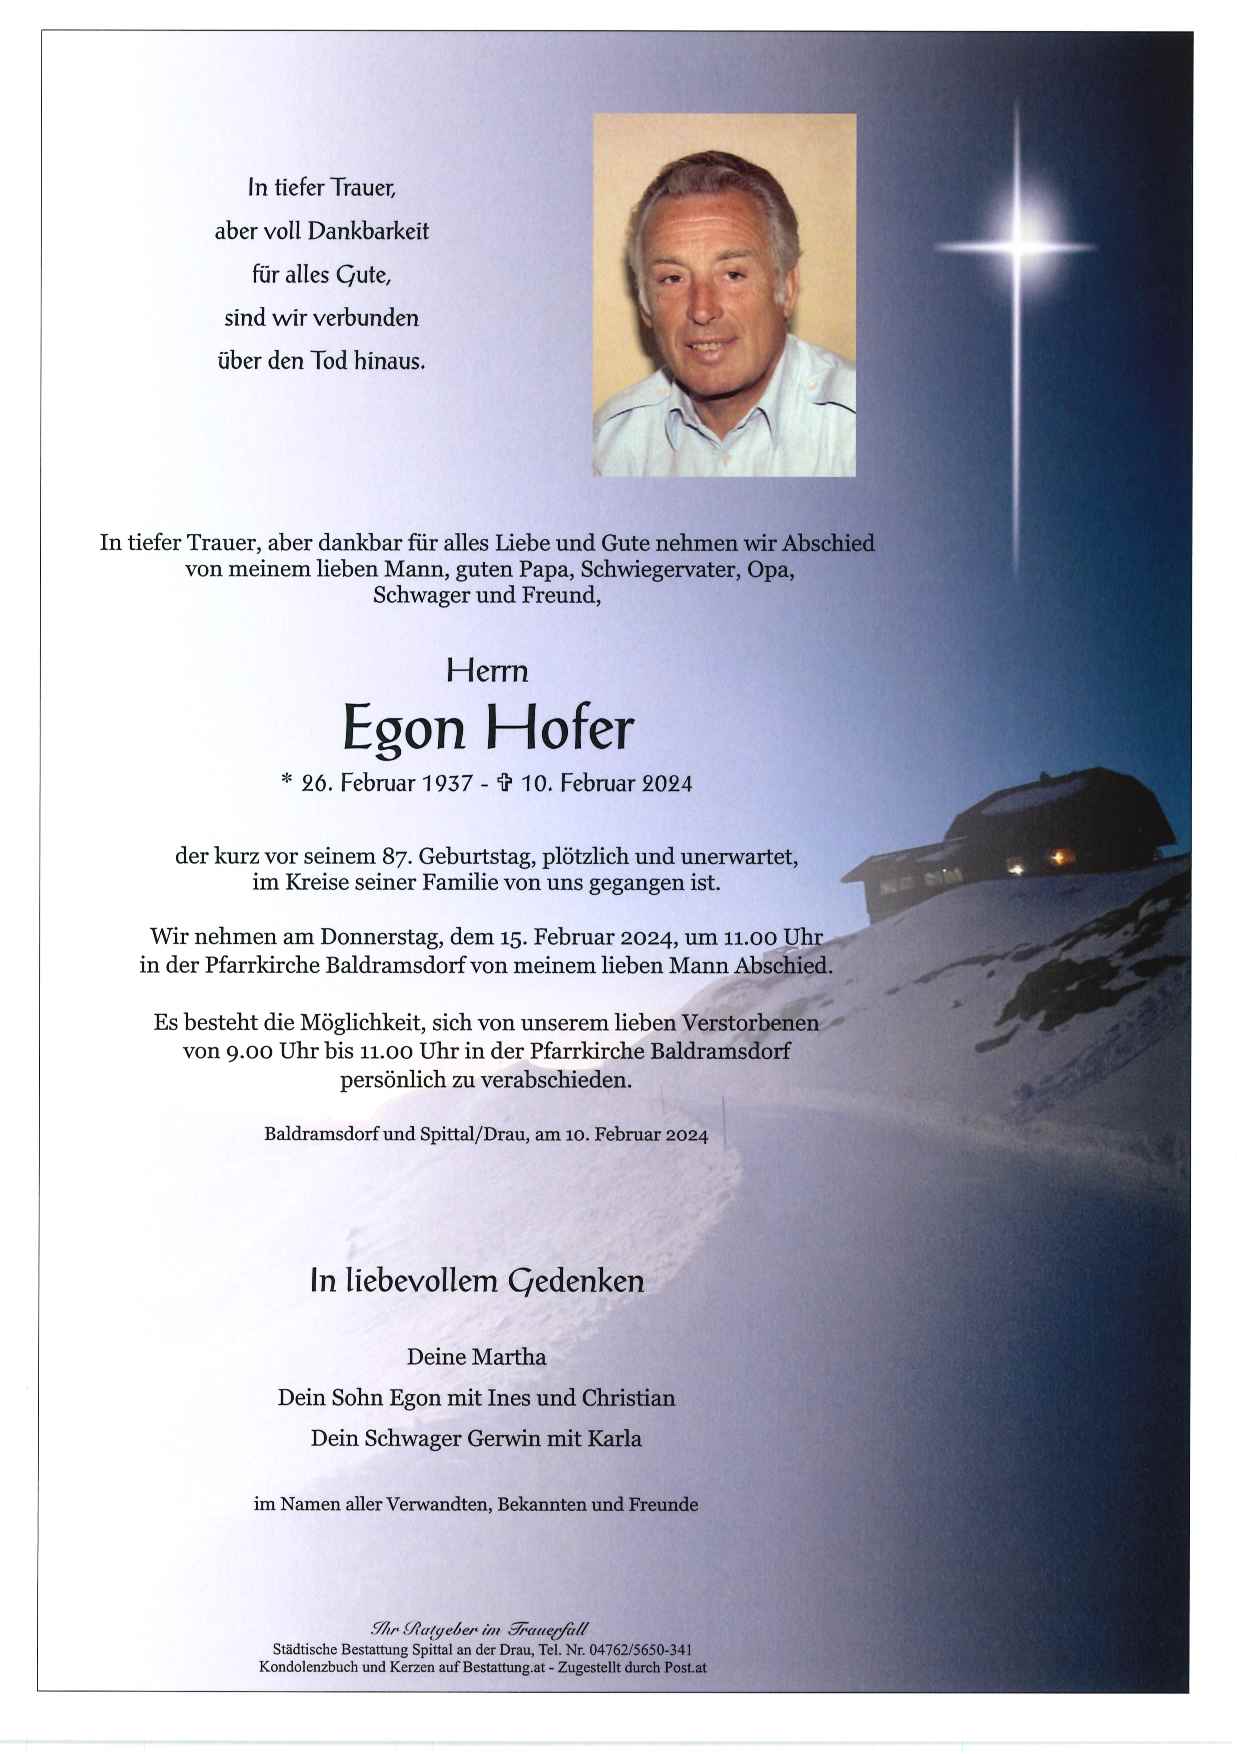 Egon Hofer